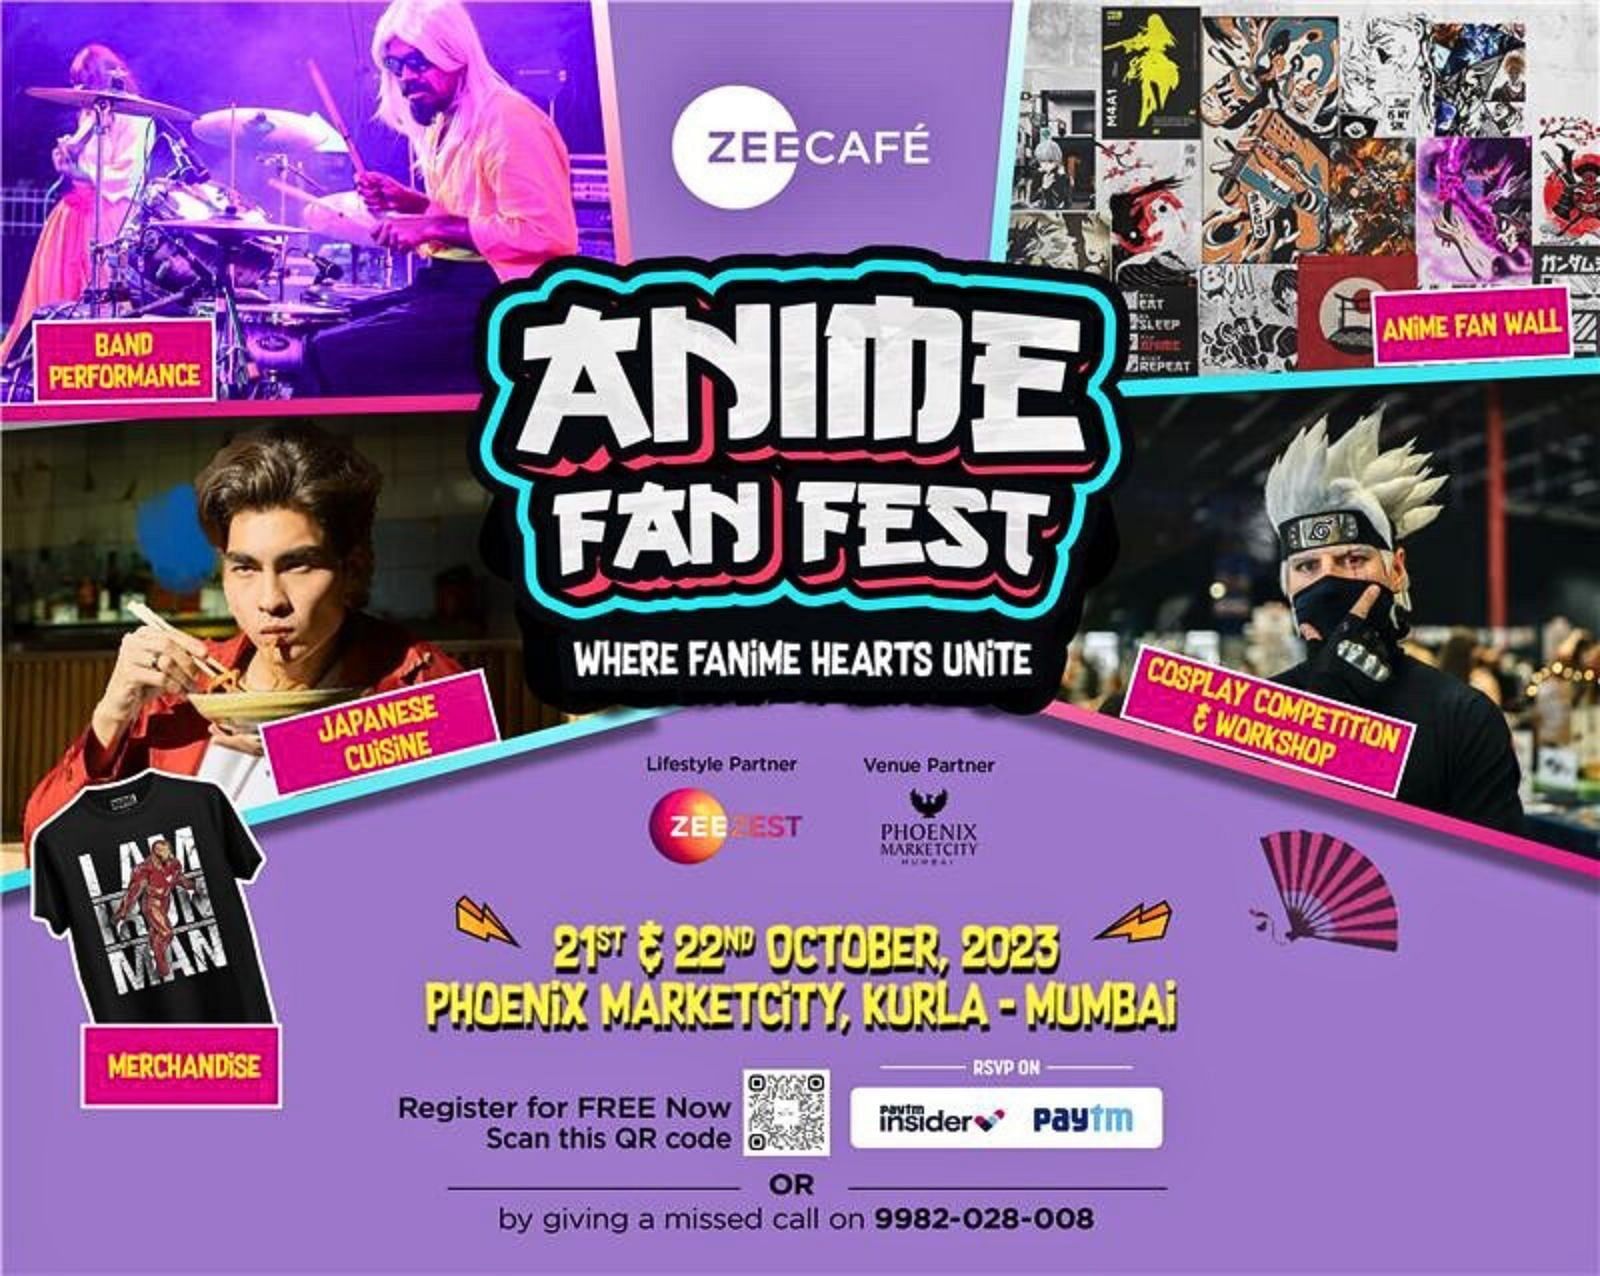 Zee Caf&eacute; Anime Fan Fest poster with registration details (Image via Zee Caf&eacute;)